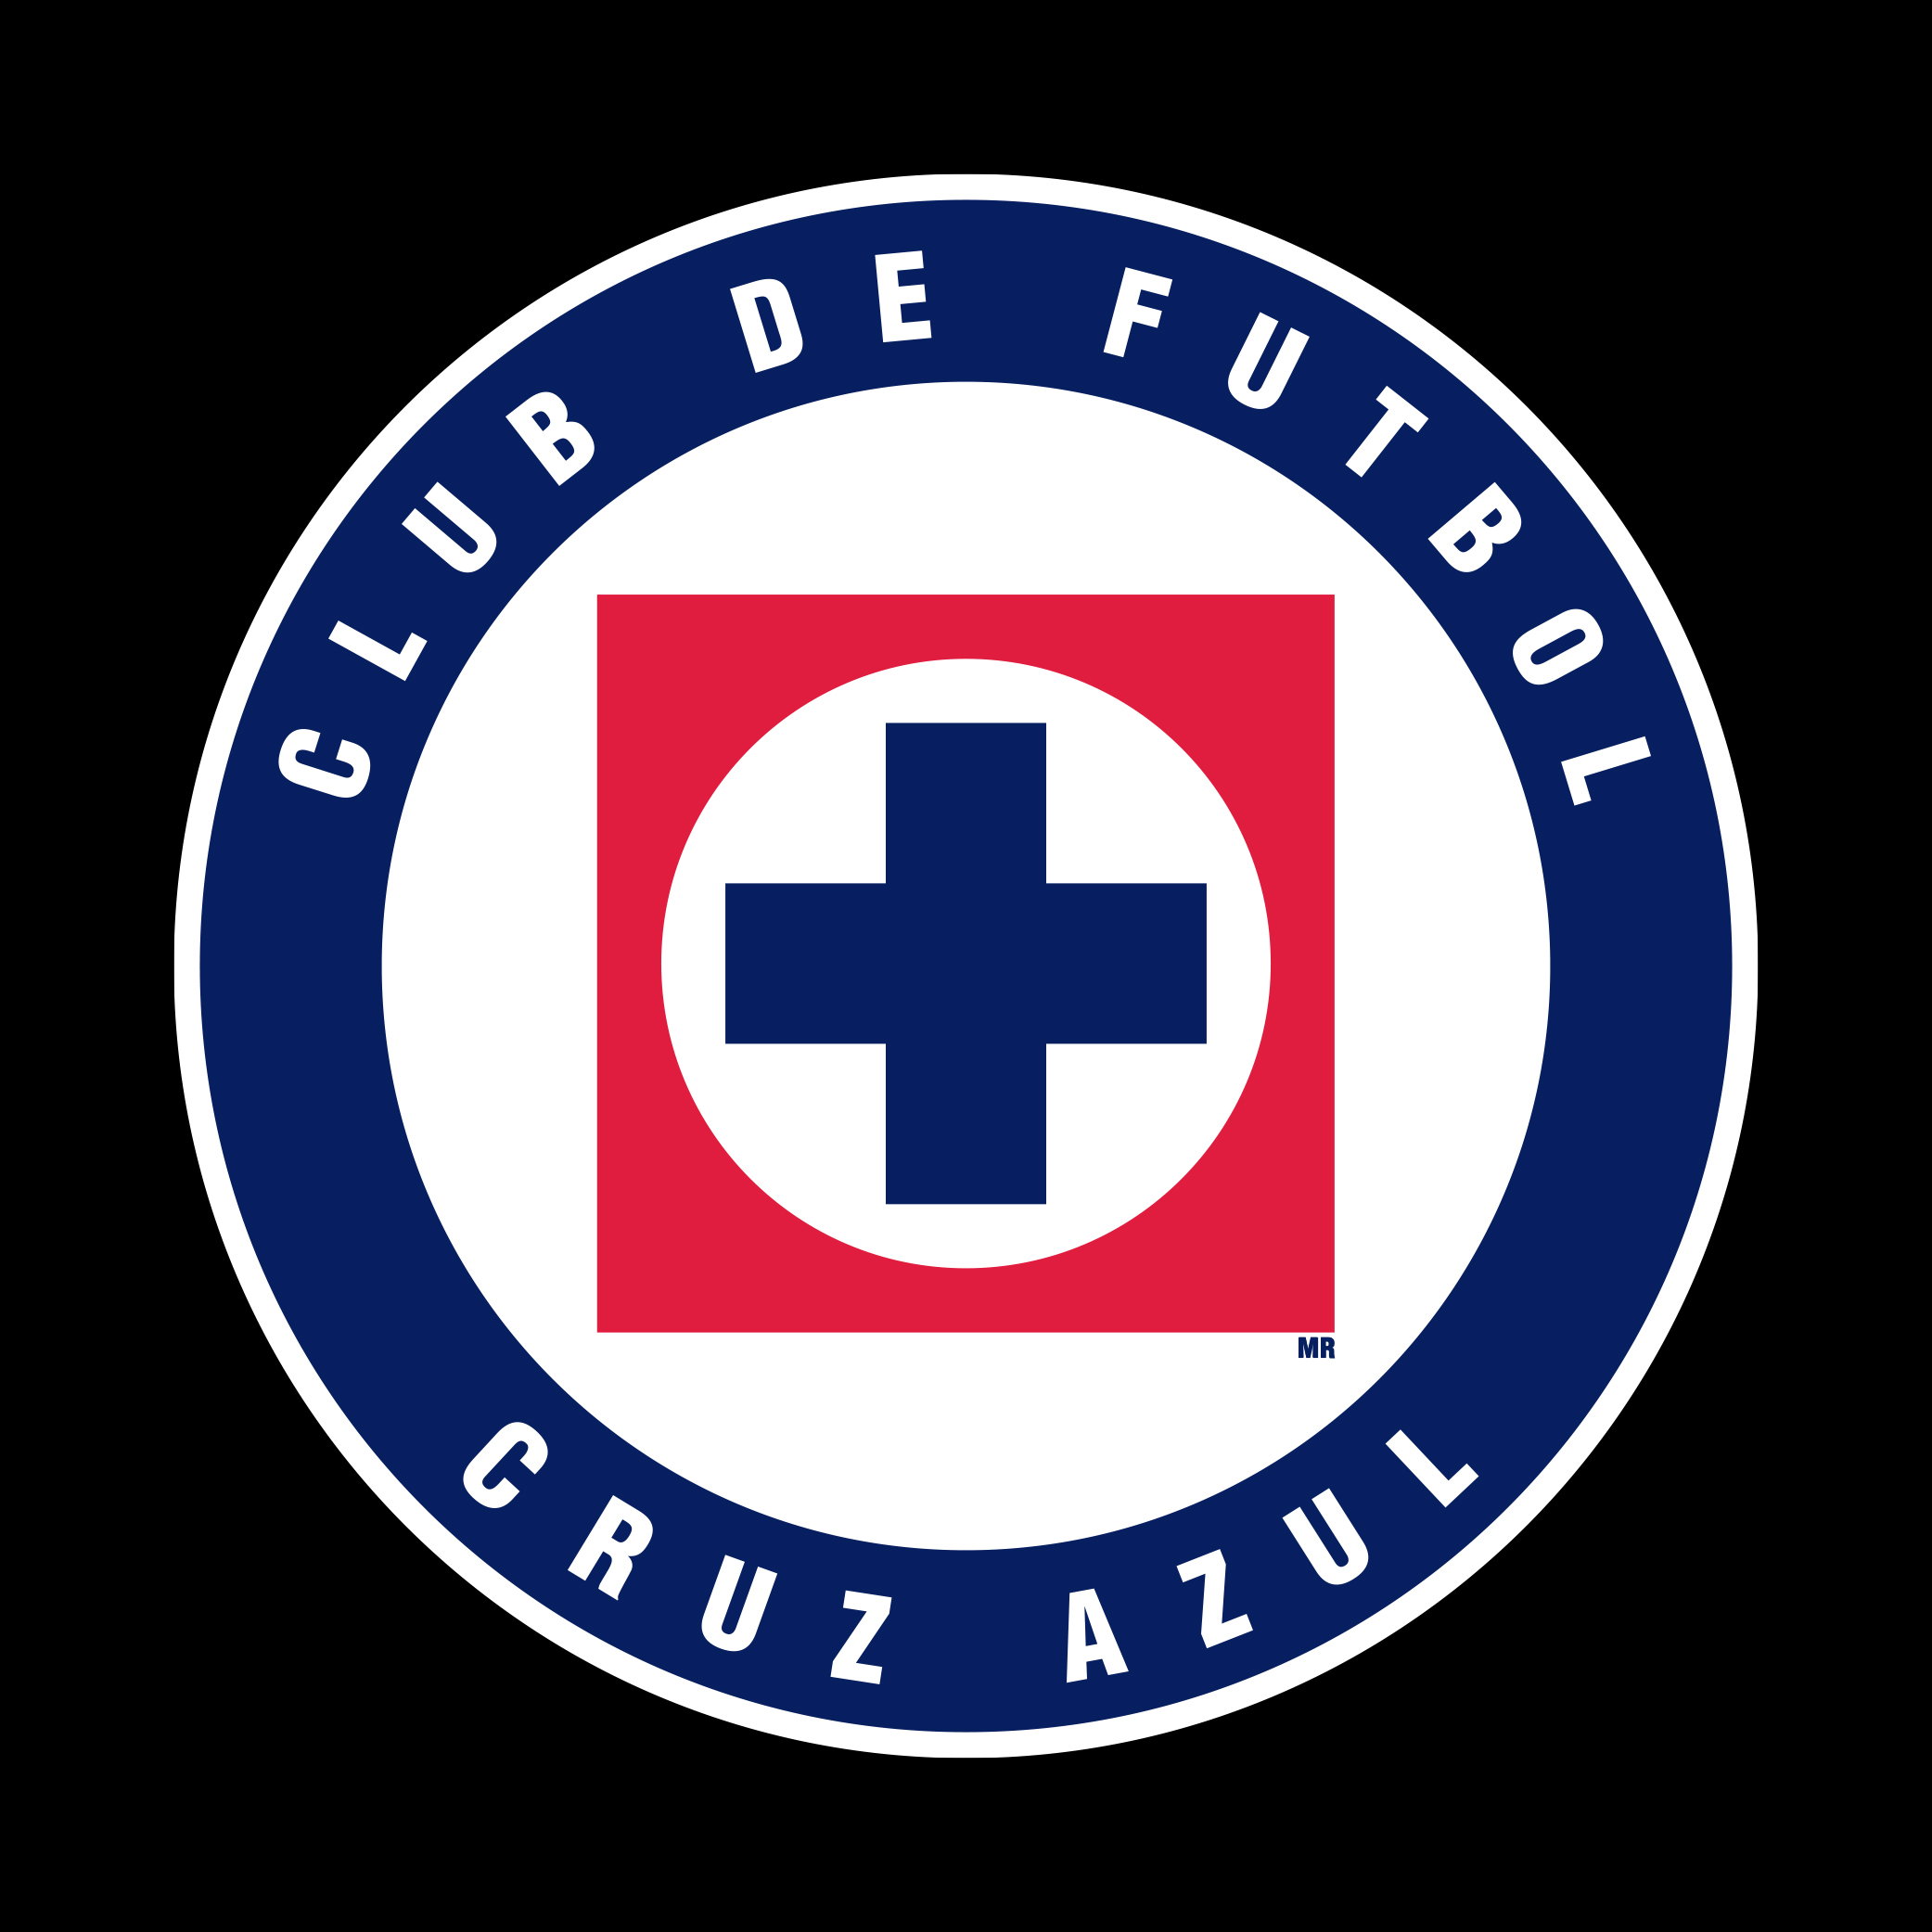 Nuevo escudo, sin estrellas (@CruzAzul)